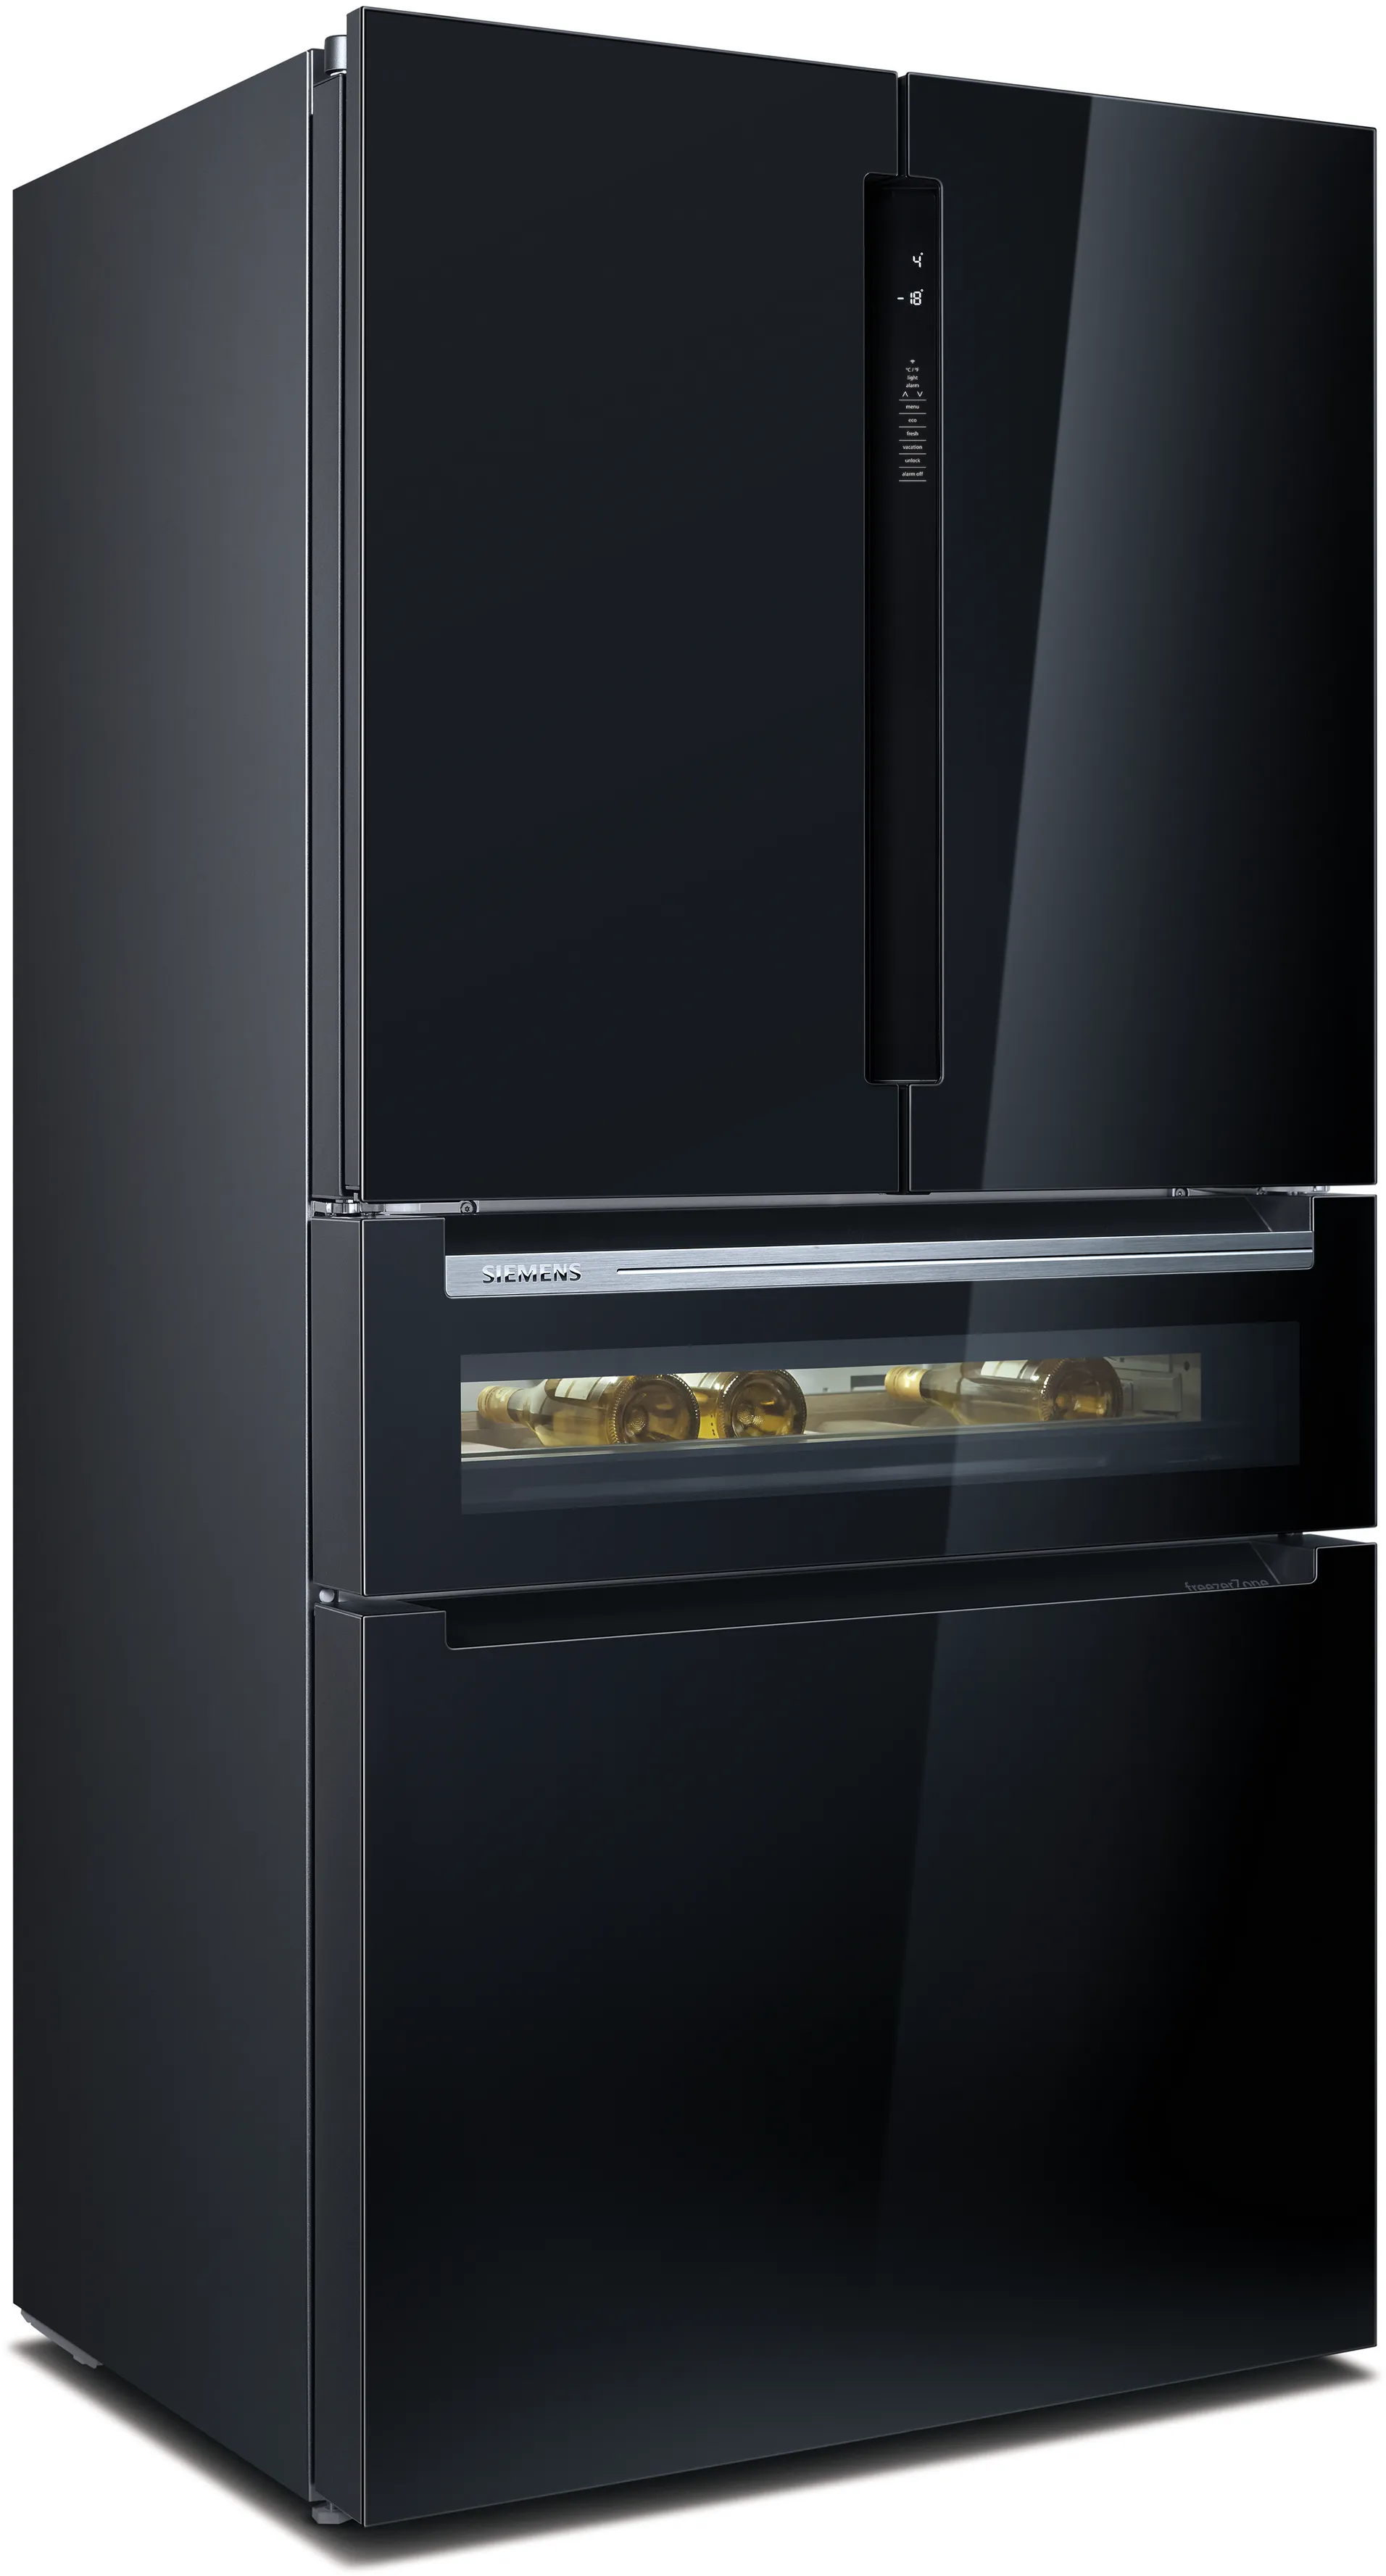 iQ700 French door chladnička s mrazničkou dole, sklenené dvere 183 x 90.5 cm čierna 